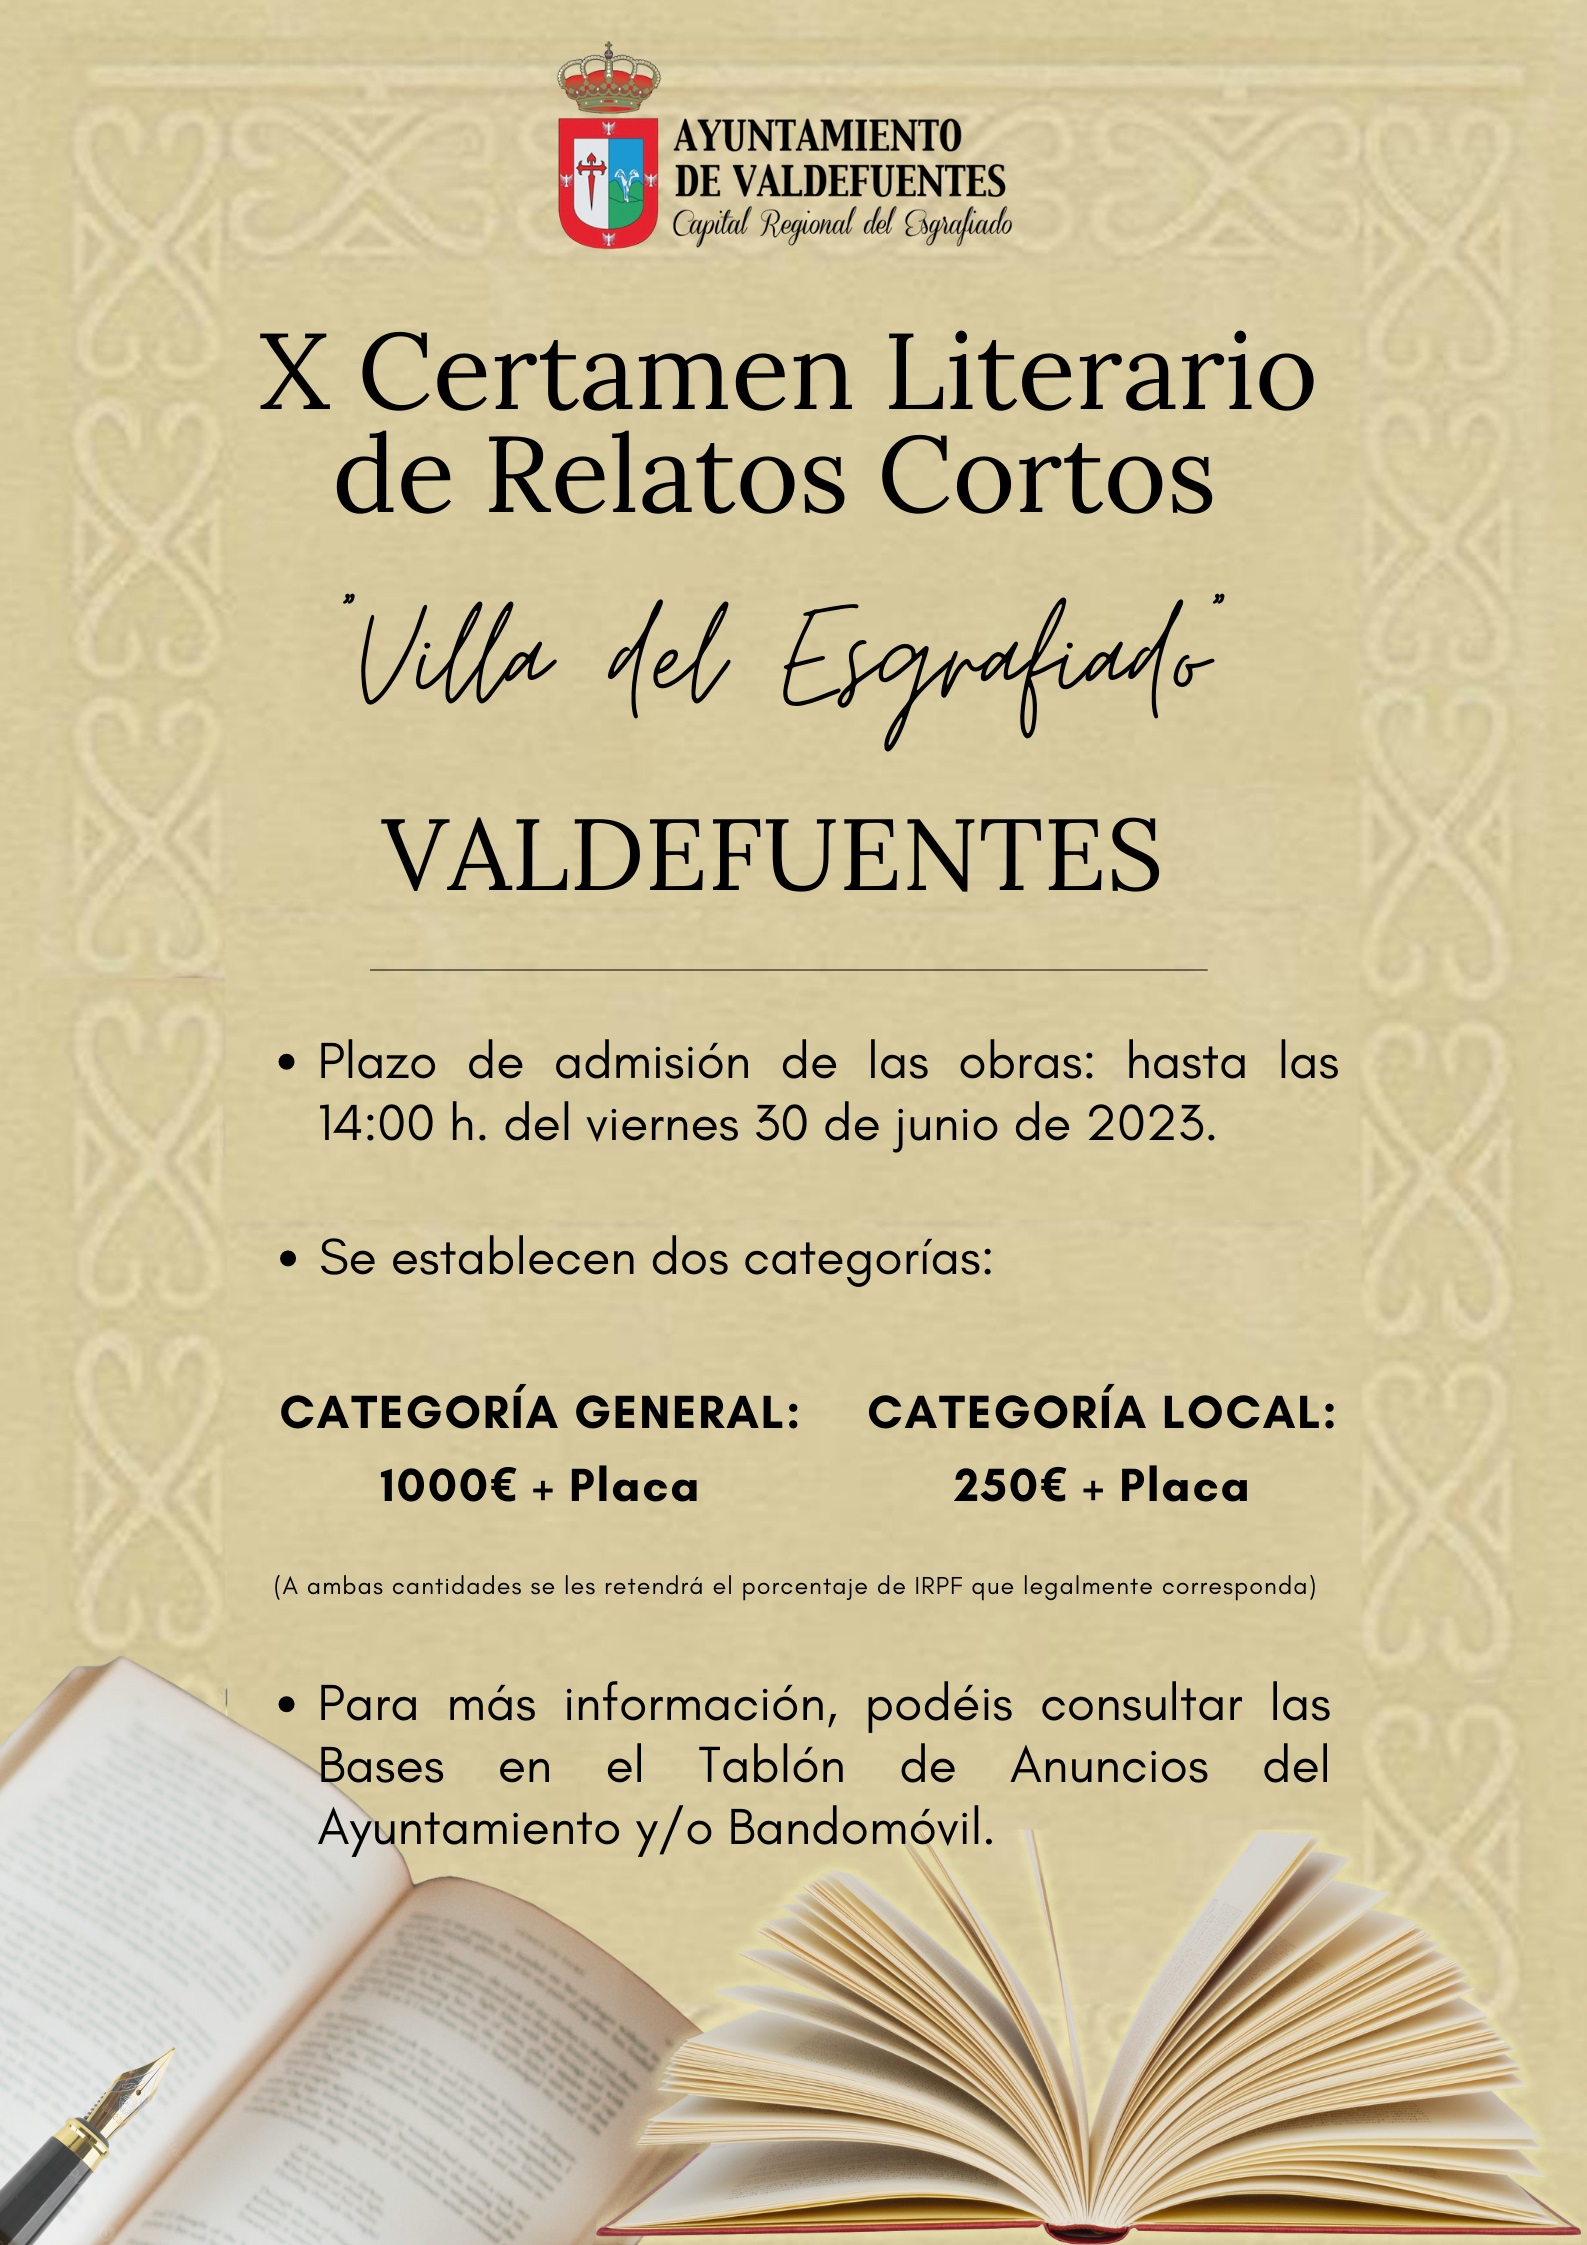 X Certamen Literario de Relatos Cortos Villa del Esgrafiado 2023